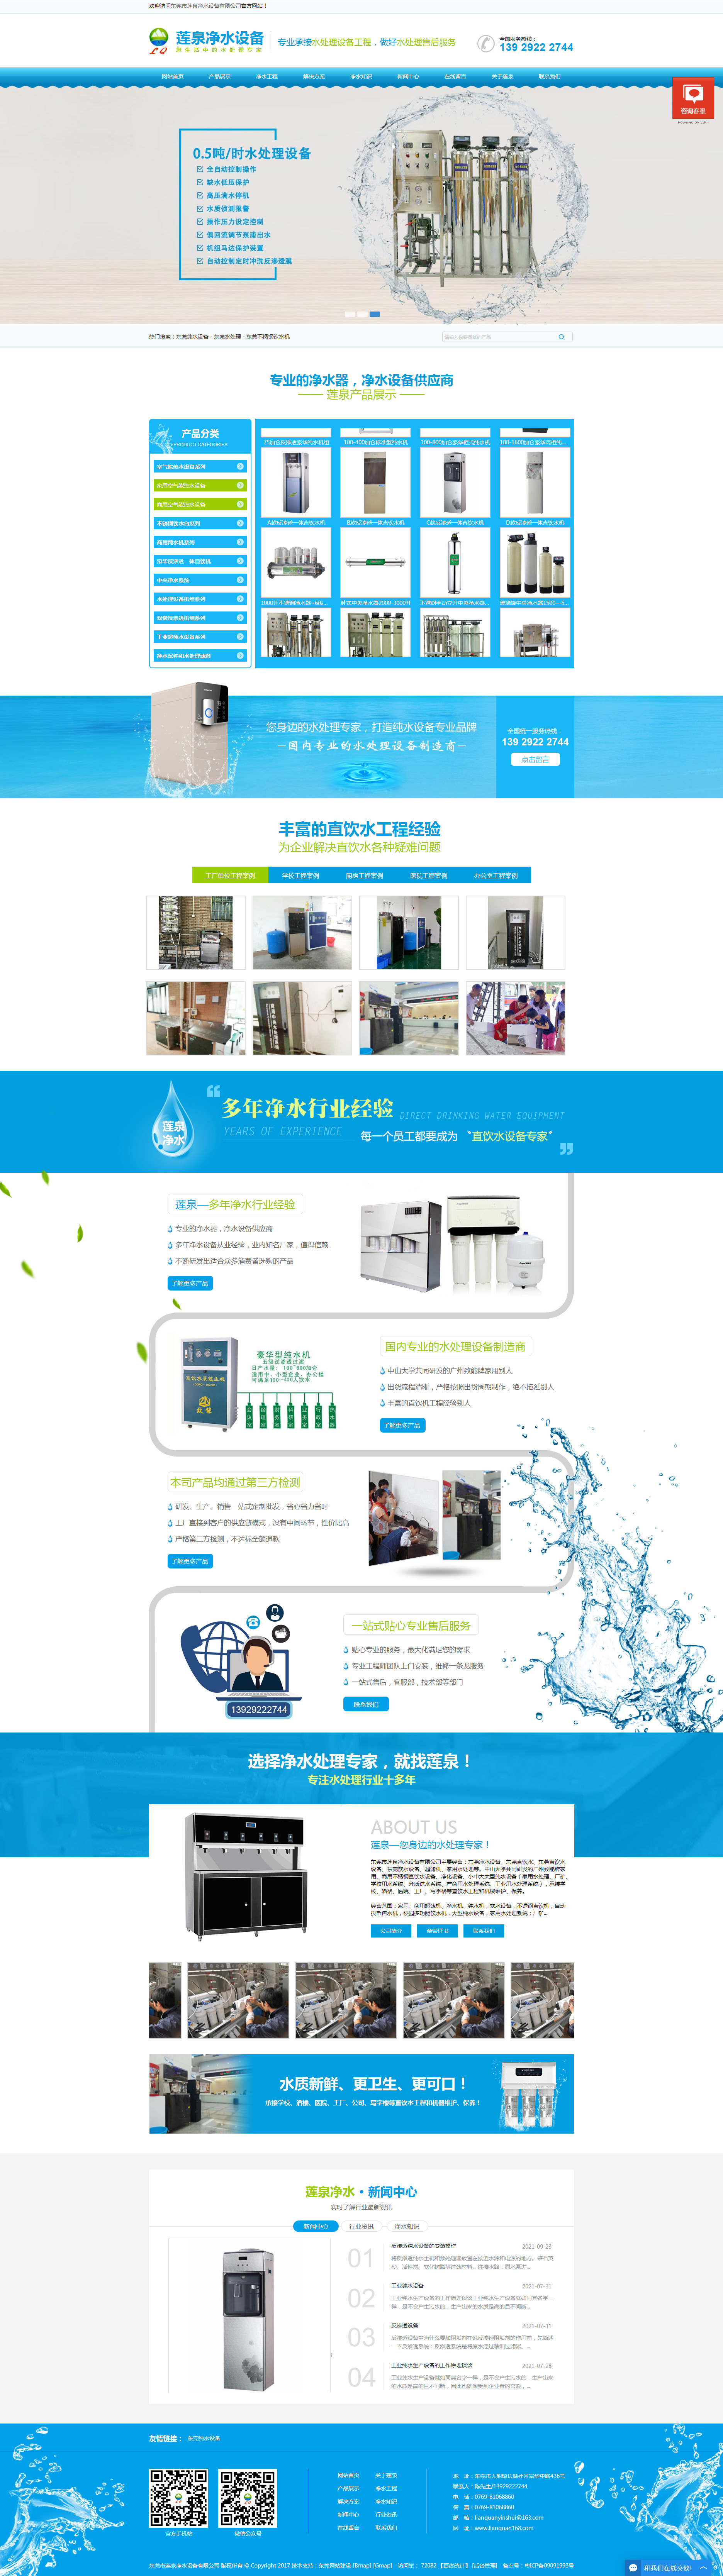 东莞莲泉净水设备网站制作首页设计效果图